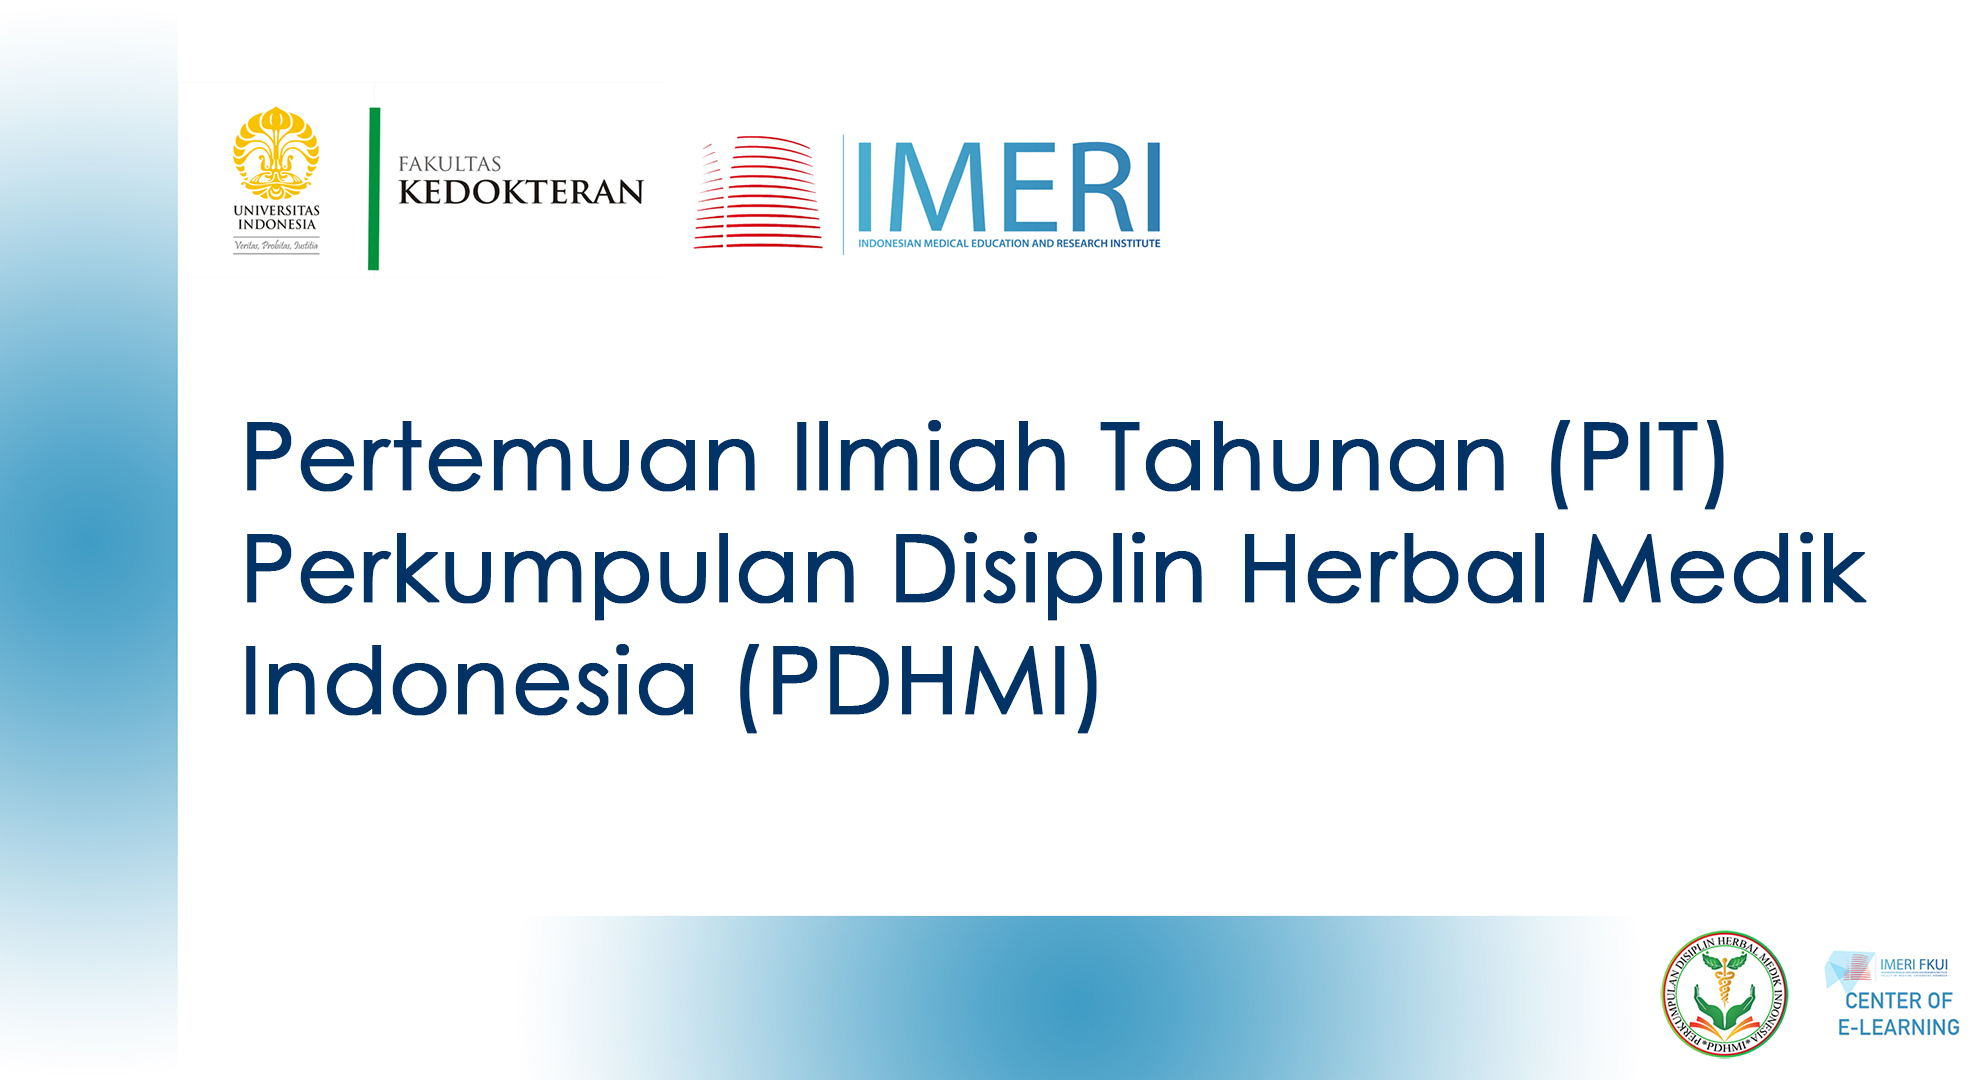 Course Image Pertemuan Ilmiah Tahunan (PIT) Perkumpulan Disiplin Herbal Medik Indonesia (PDHMI)